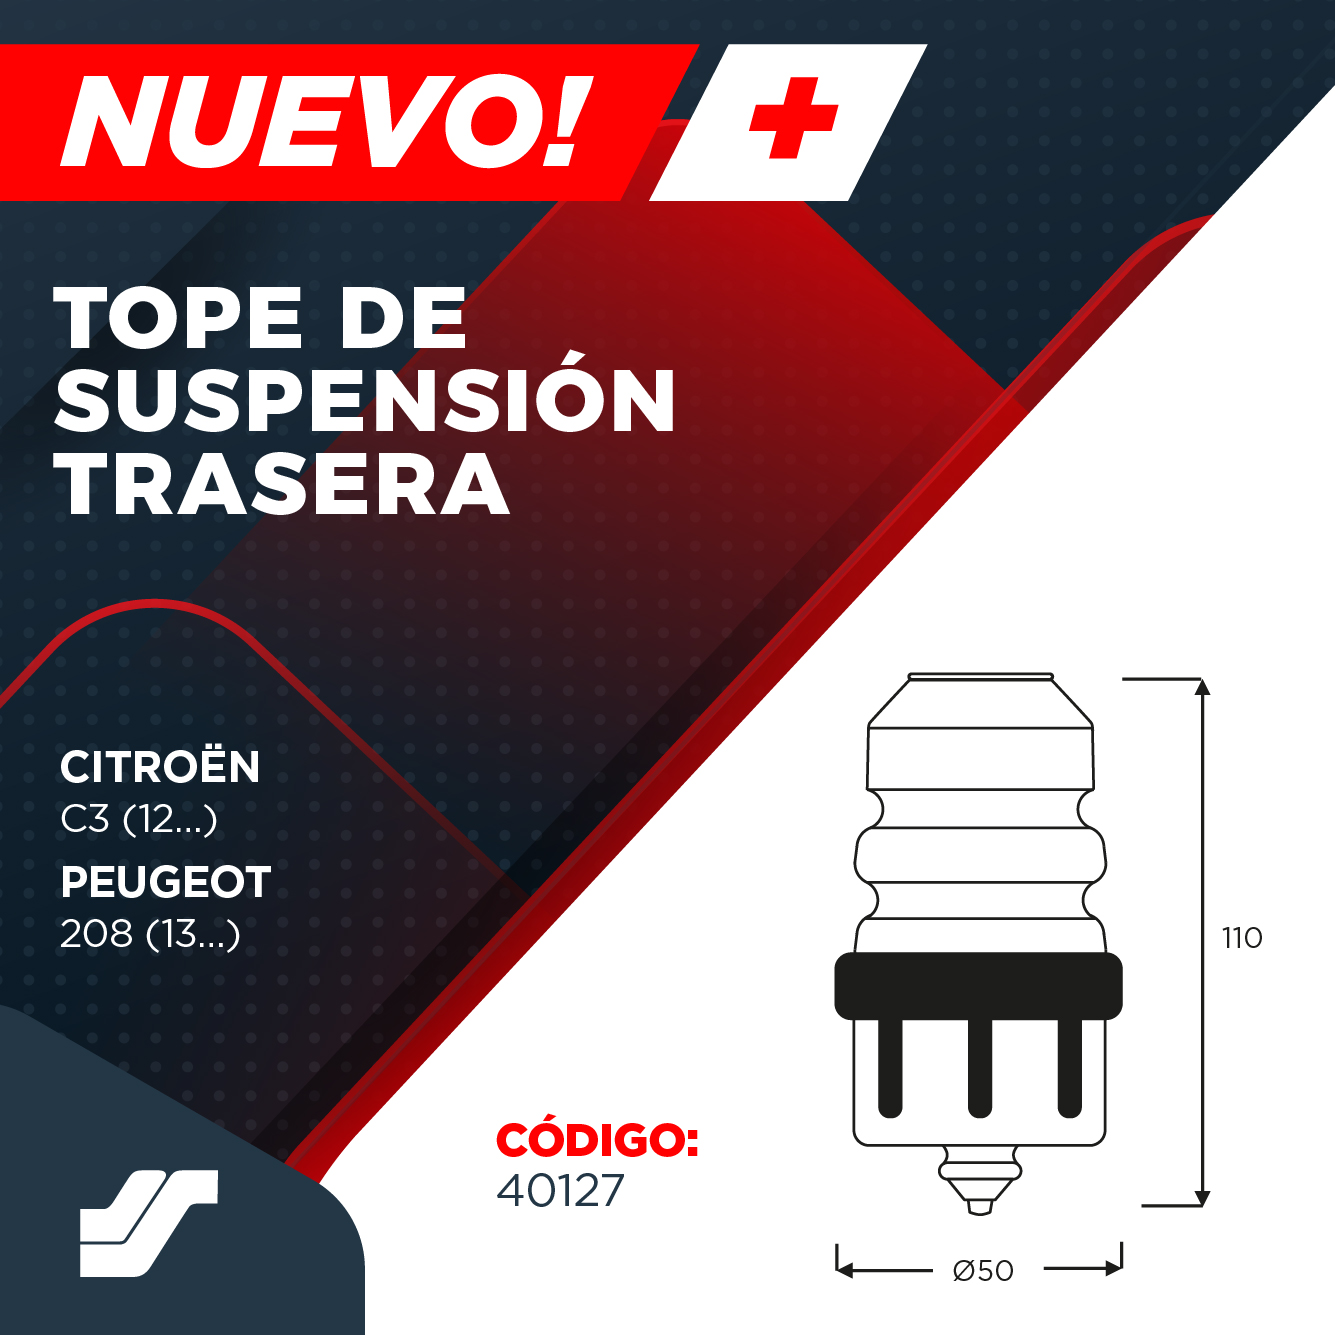 TOPE DE SUSPENSIÓN TRASERA CITROËN C3 y PEUGEOT 208